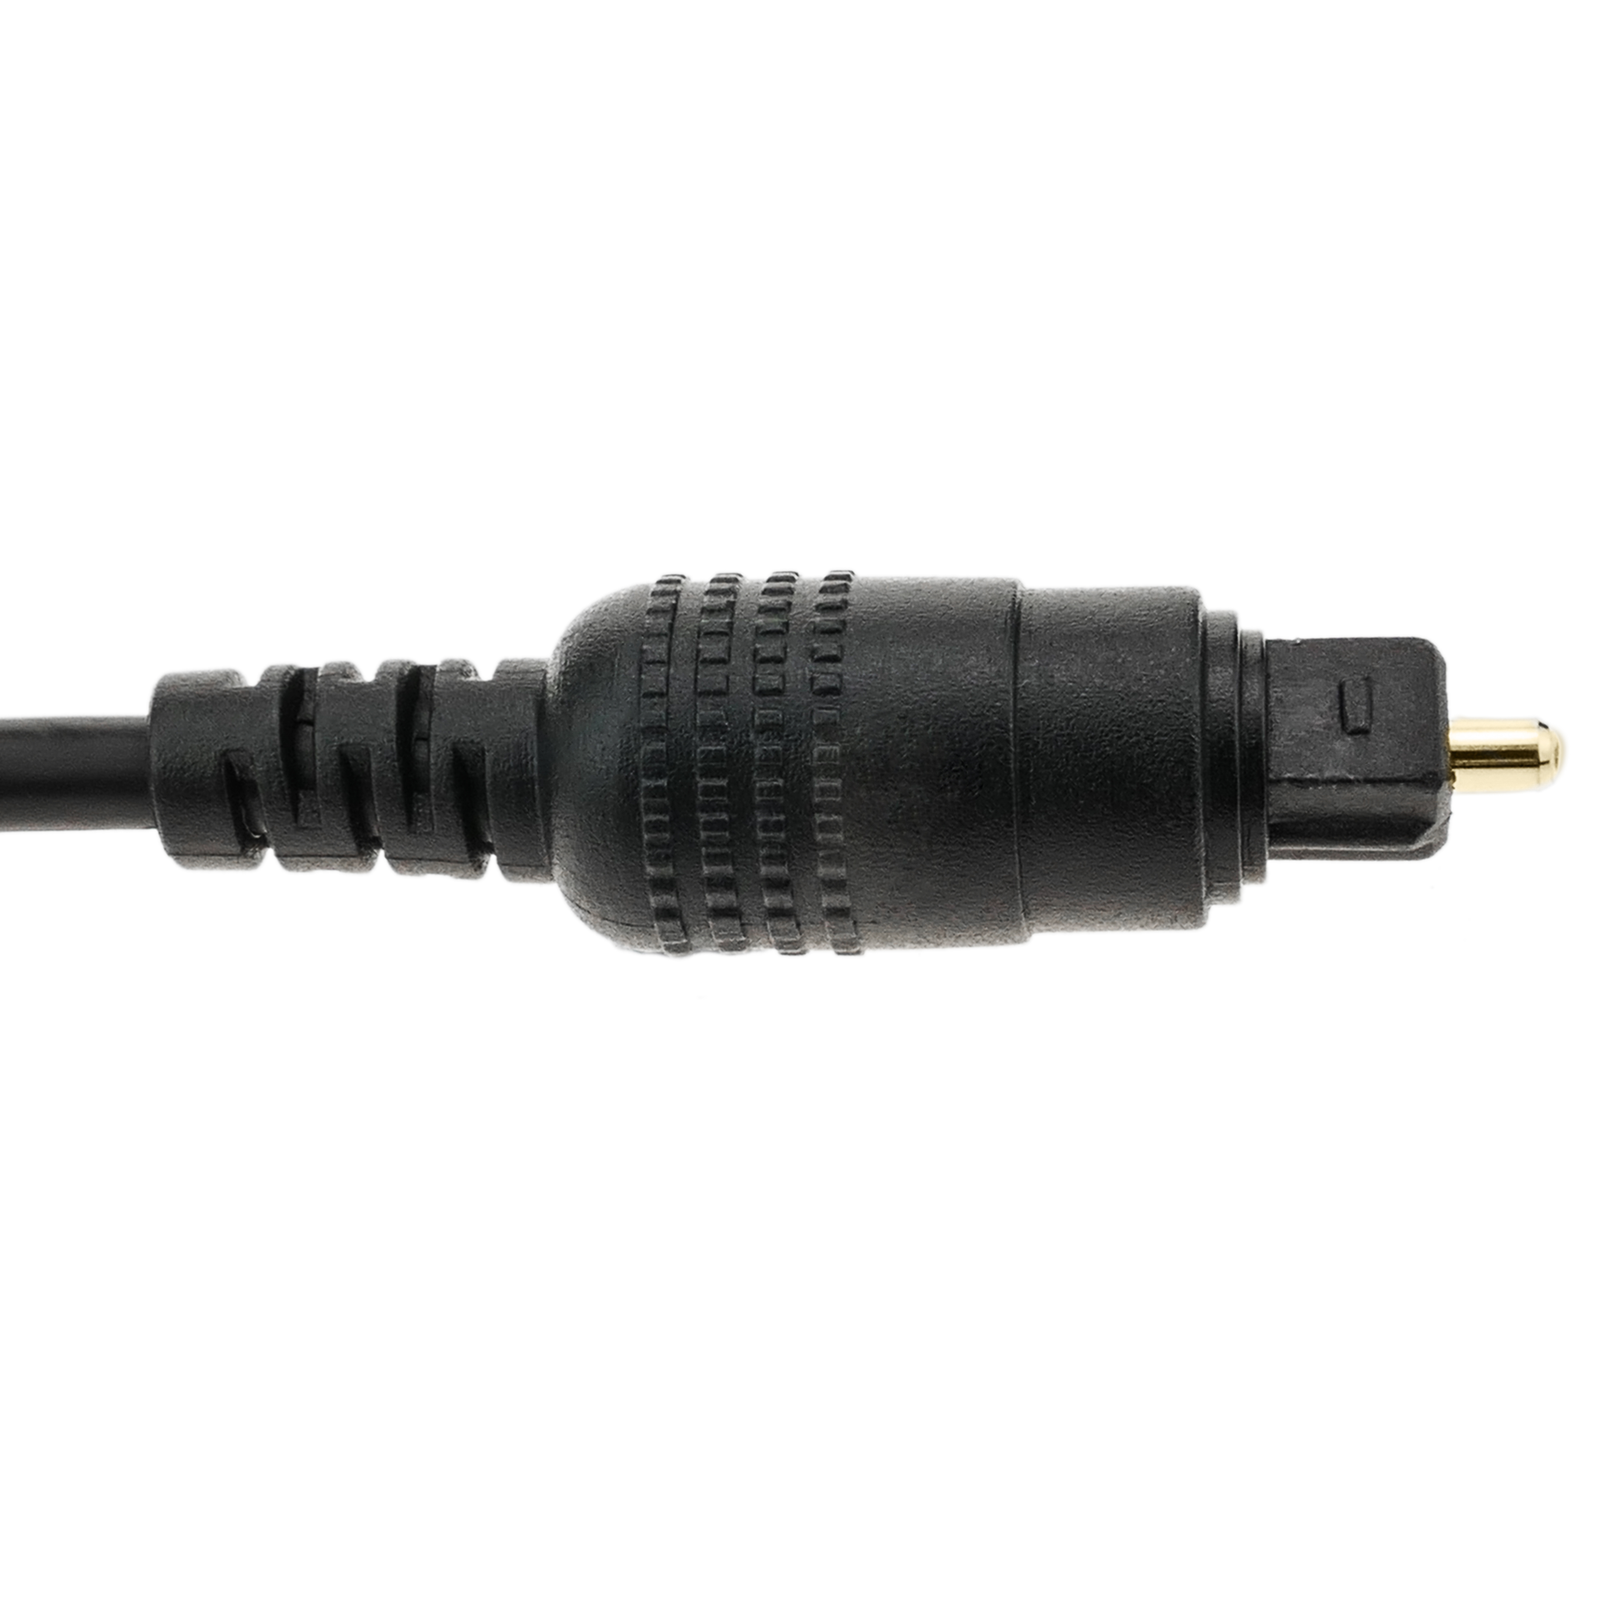 Cable Toslink de audio digital óptico de 1 m - Cablematic